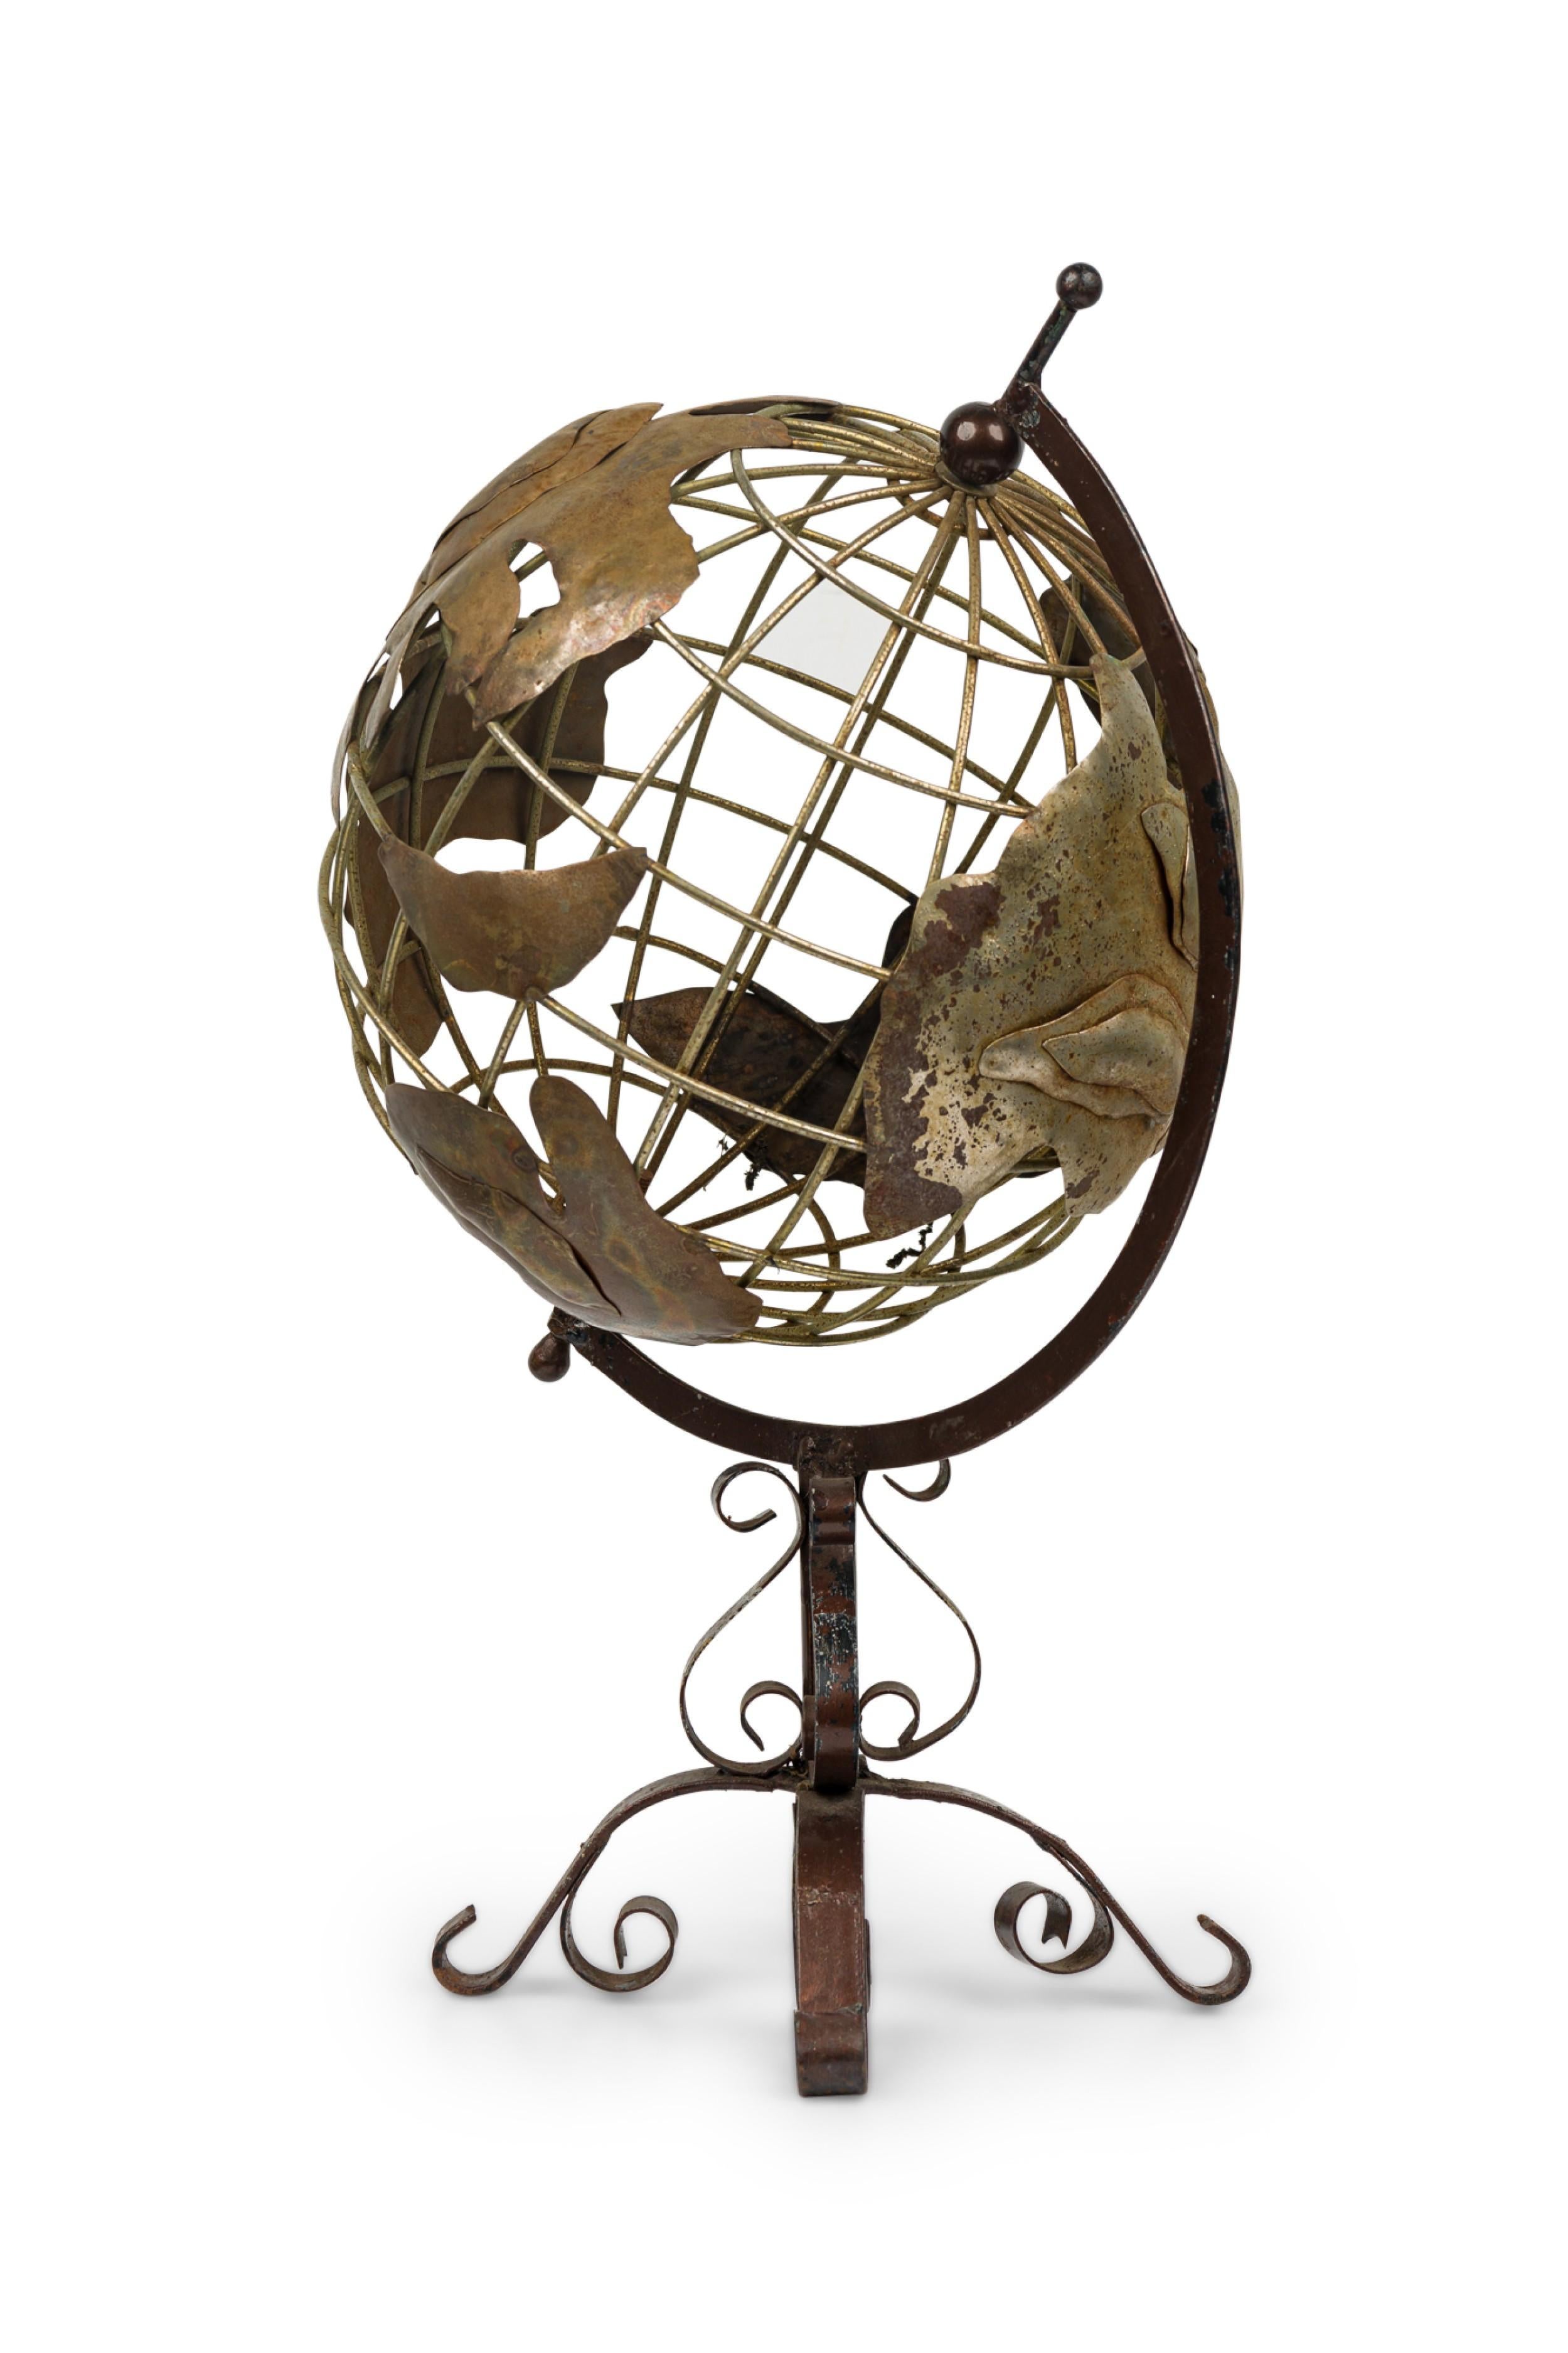 Globe terrestre contemporain en métal ajouré tournant sur son axe à un angle incliné, monté sur un support métallique en forme de volute.
 

 Usure de finition
